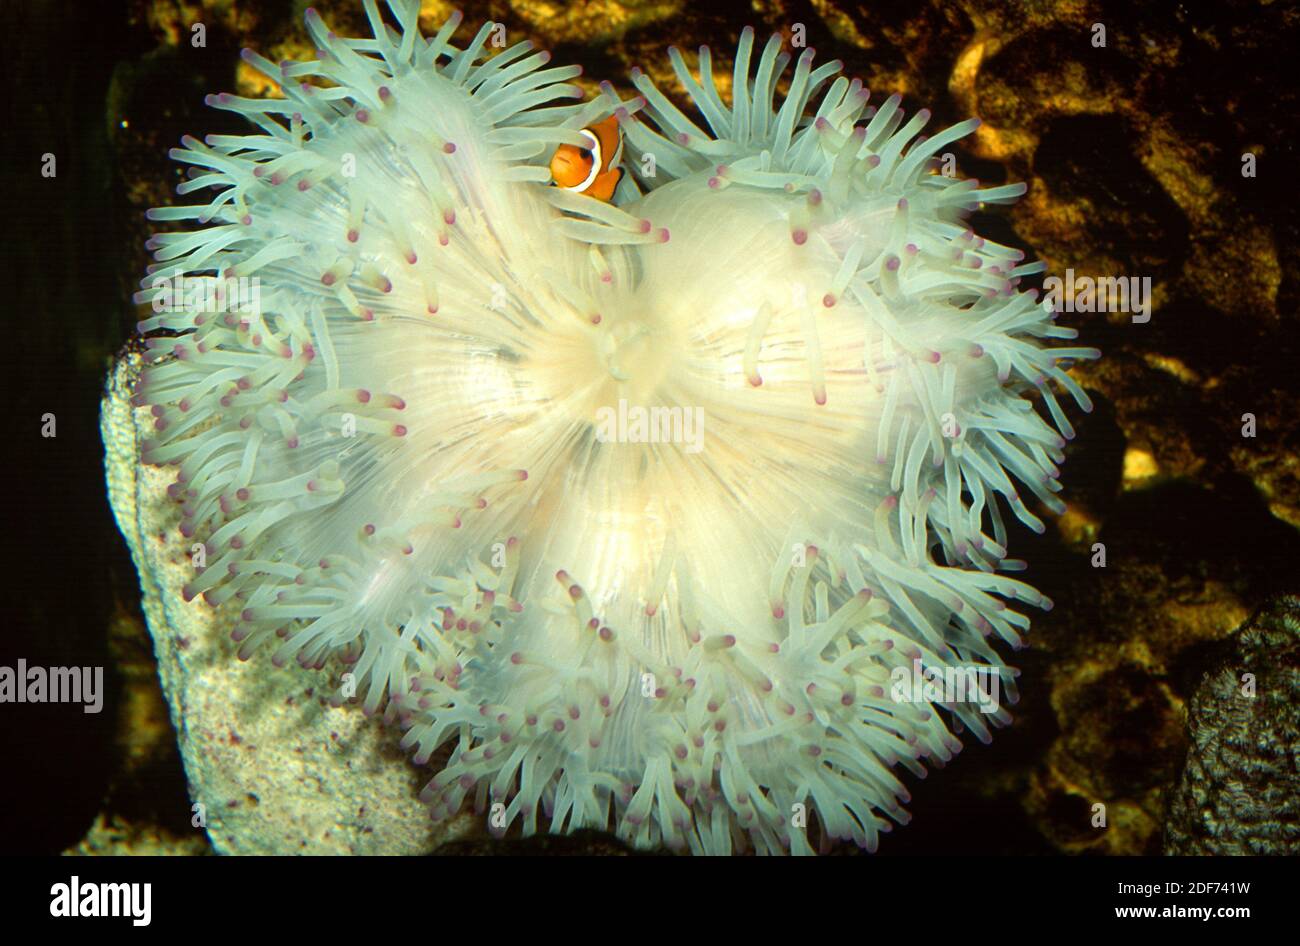 La anémona de la alfombra gigante (Stichodactyla gigantea) es un coral suave. Foto de stock